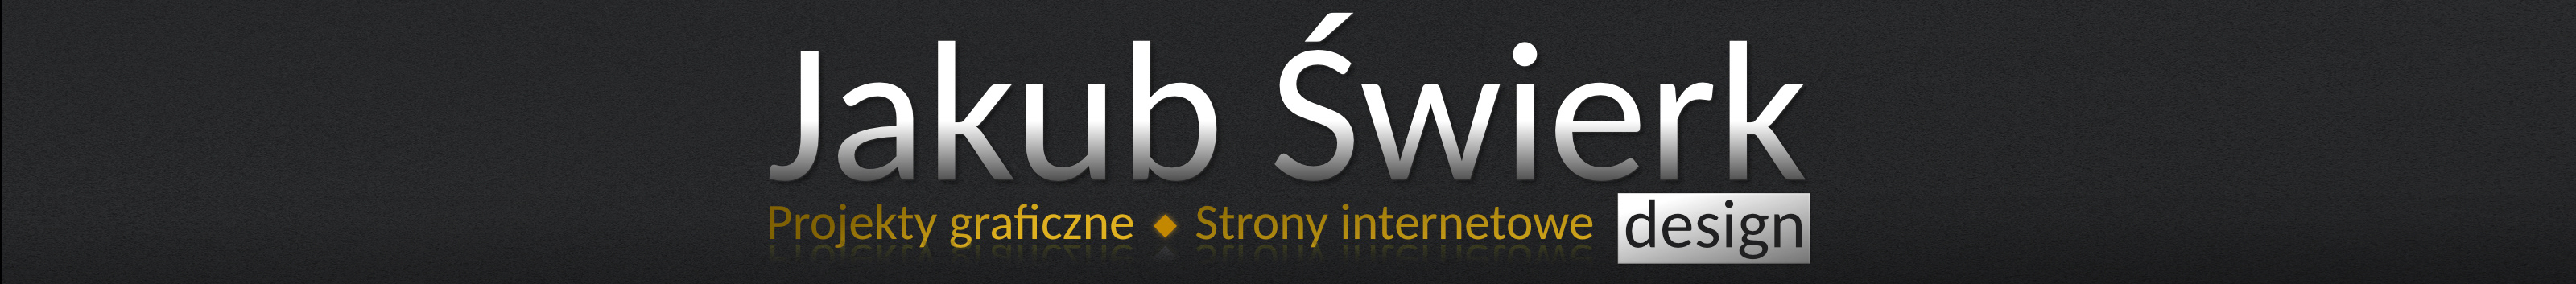 Jakub Świerk's profile banner